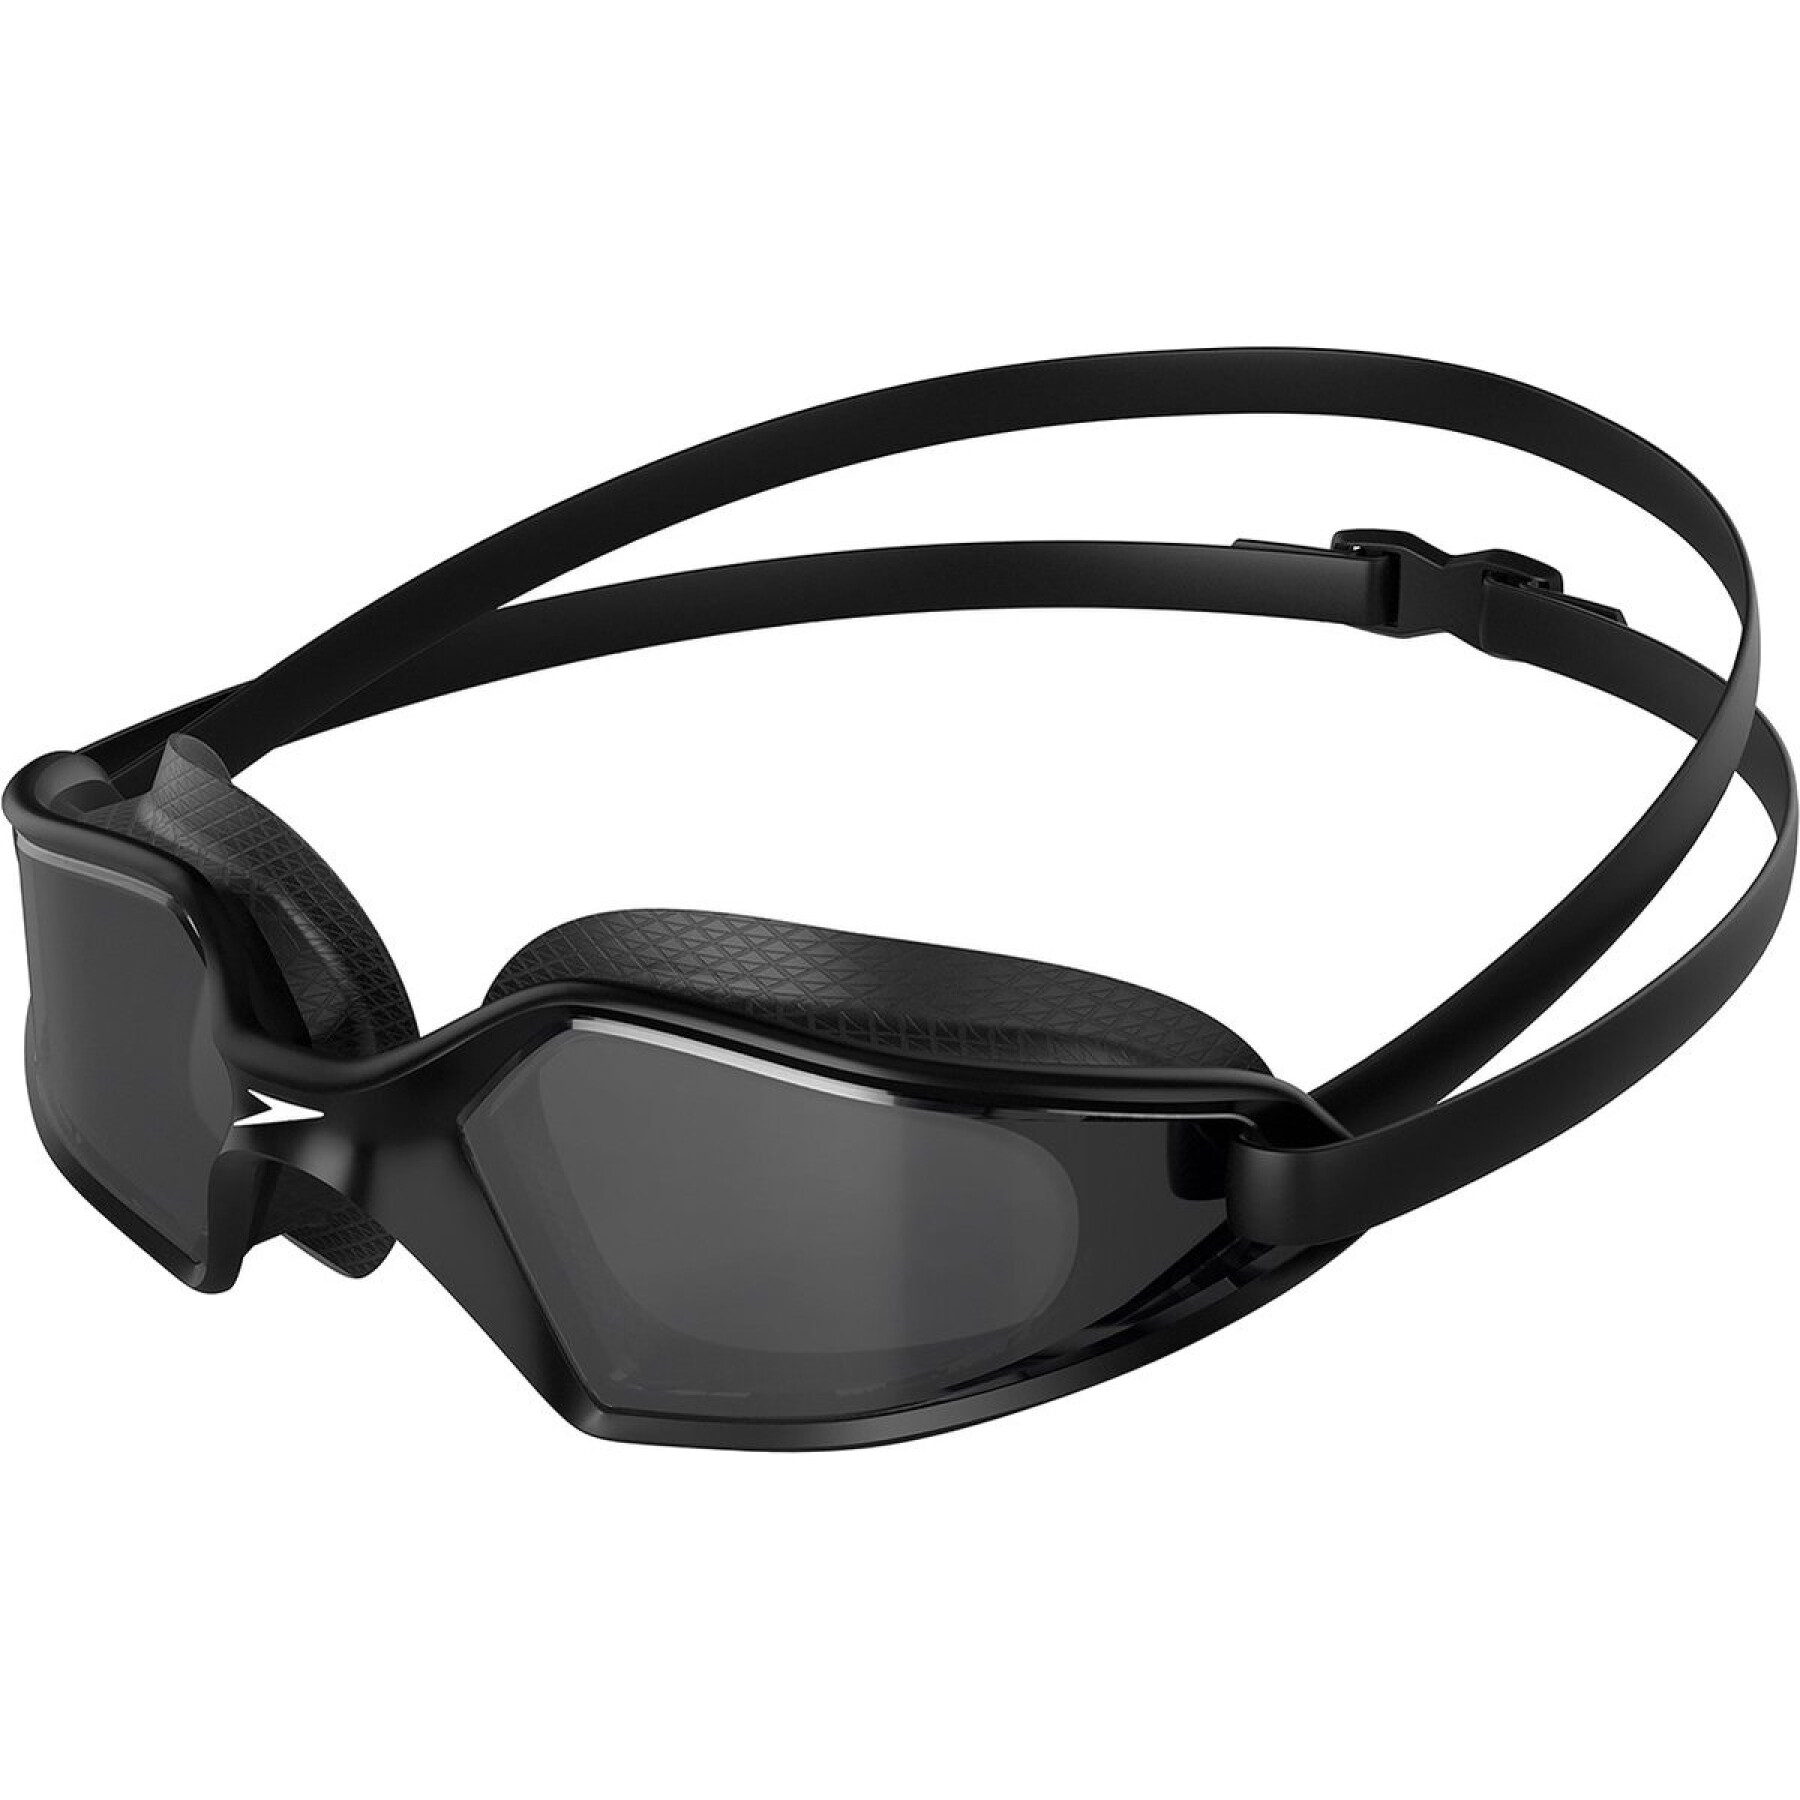 Gafas de natación Speedo Hydropulse